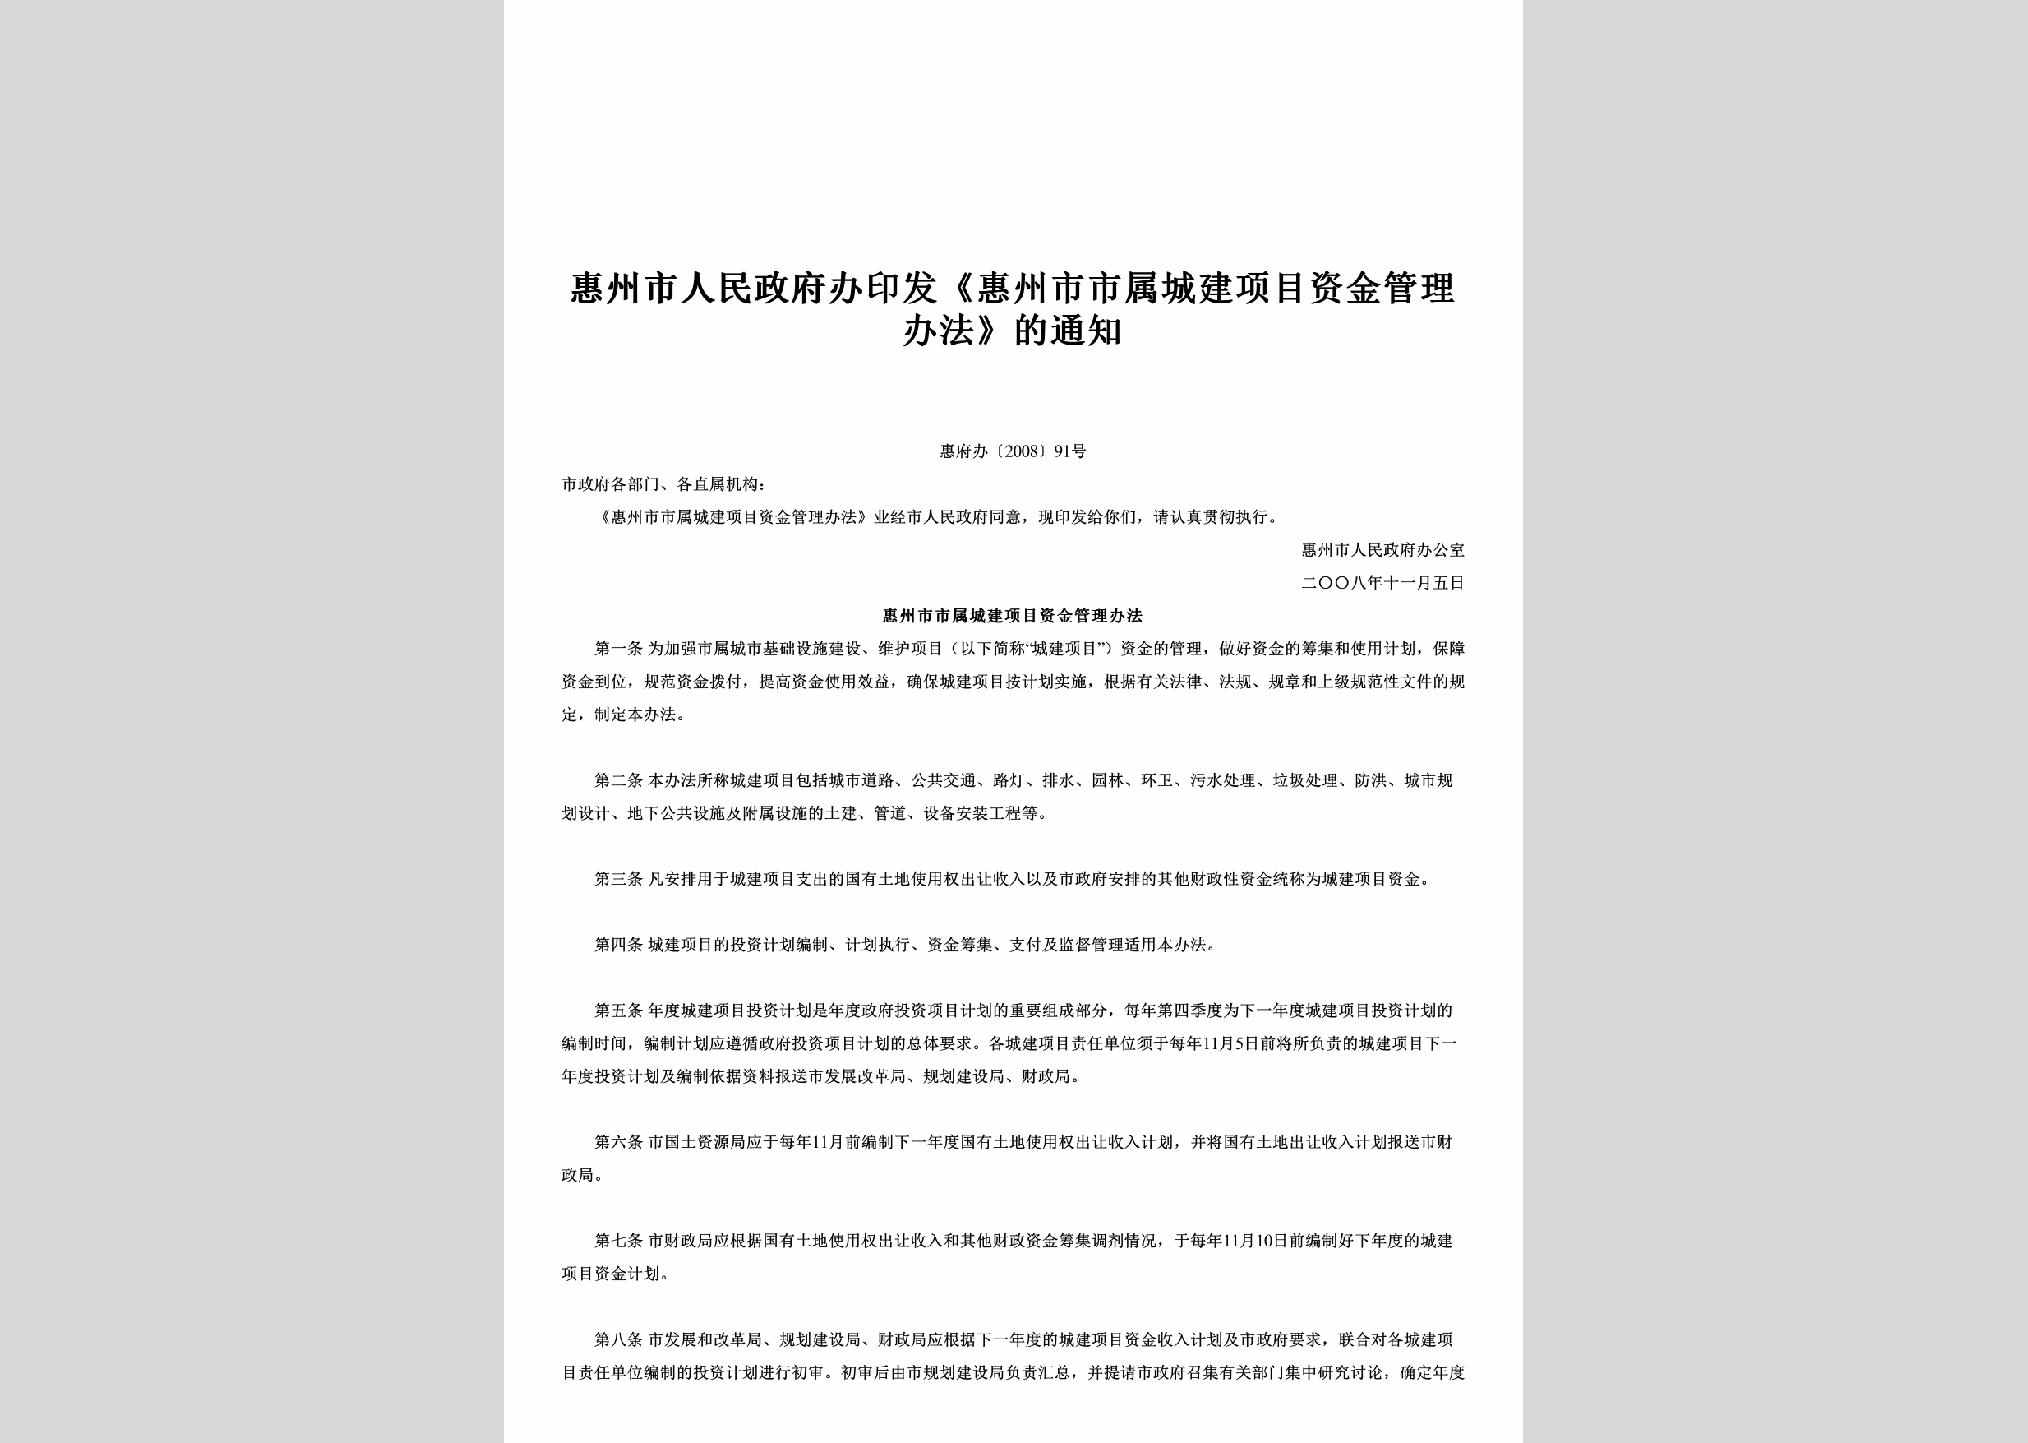 惠府办[2008]91号：印发《惠州市市属城建项目资金管理办法》的通知